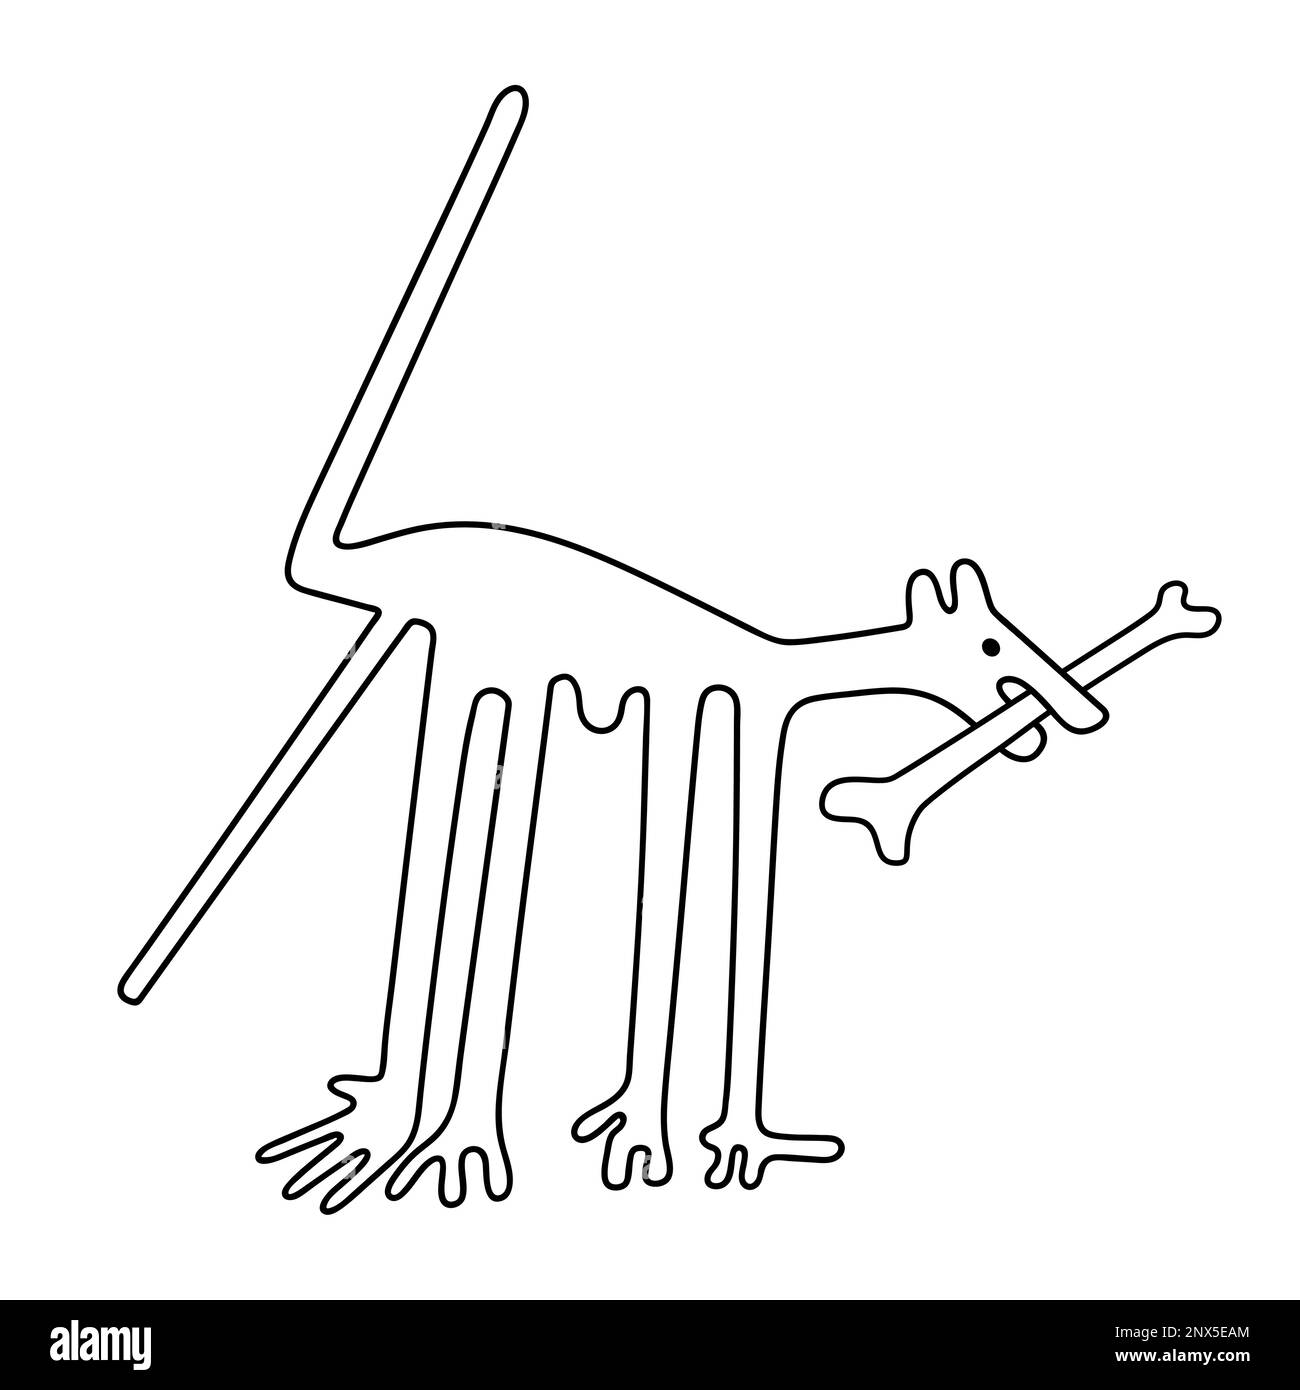 Der Hund mit Knochen - eine Paraphrase der berühmten Geoglyphe der Hund aus Nazca Stock Vektor